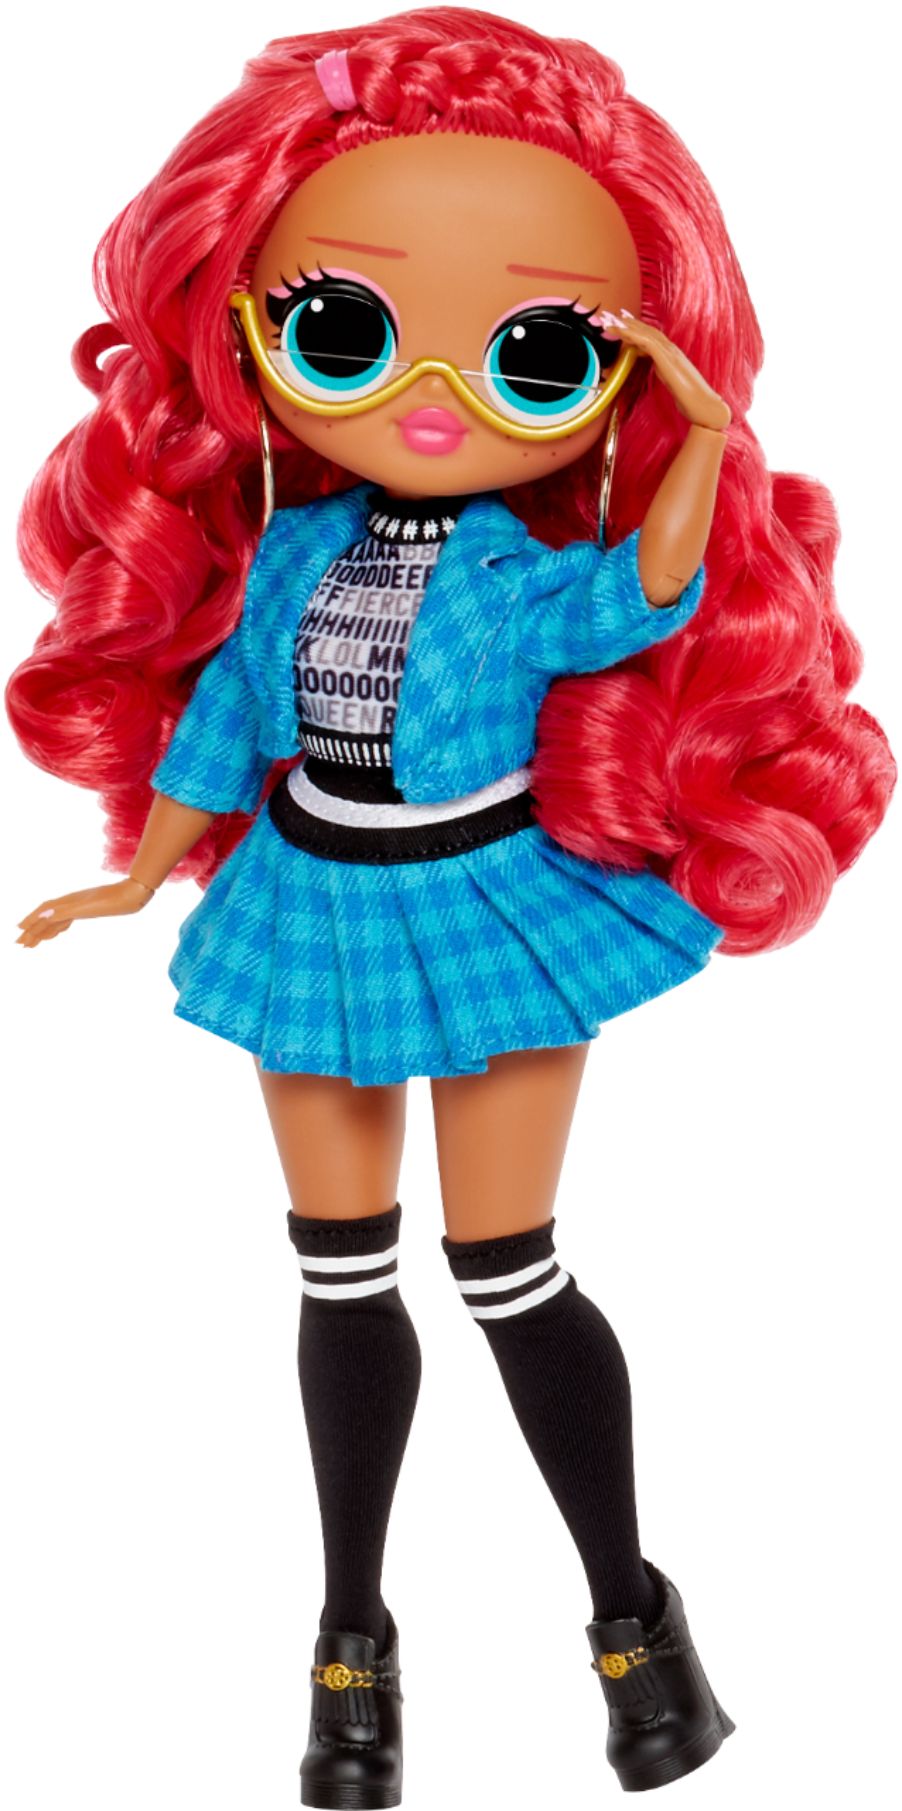 OMG Series 3 Class Prez Doll 20 Surprises – L.O.L. Surprise